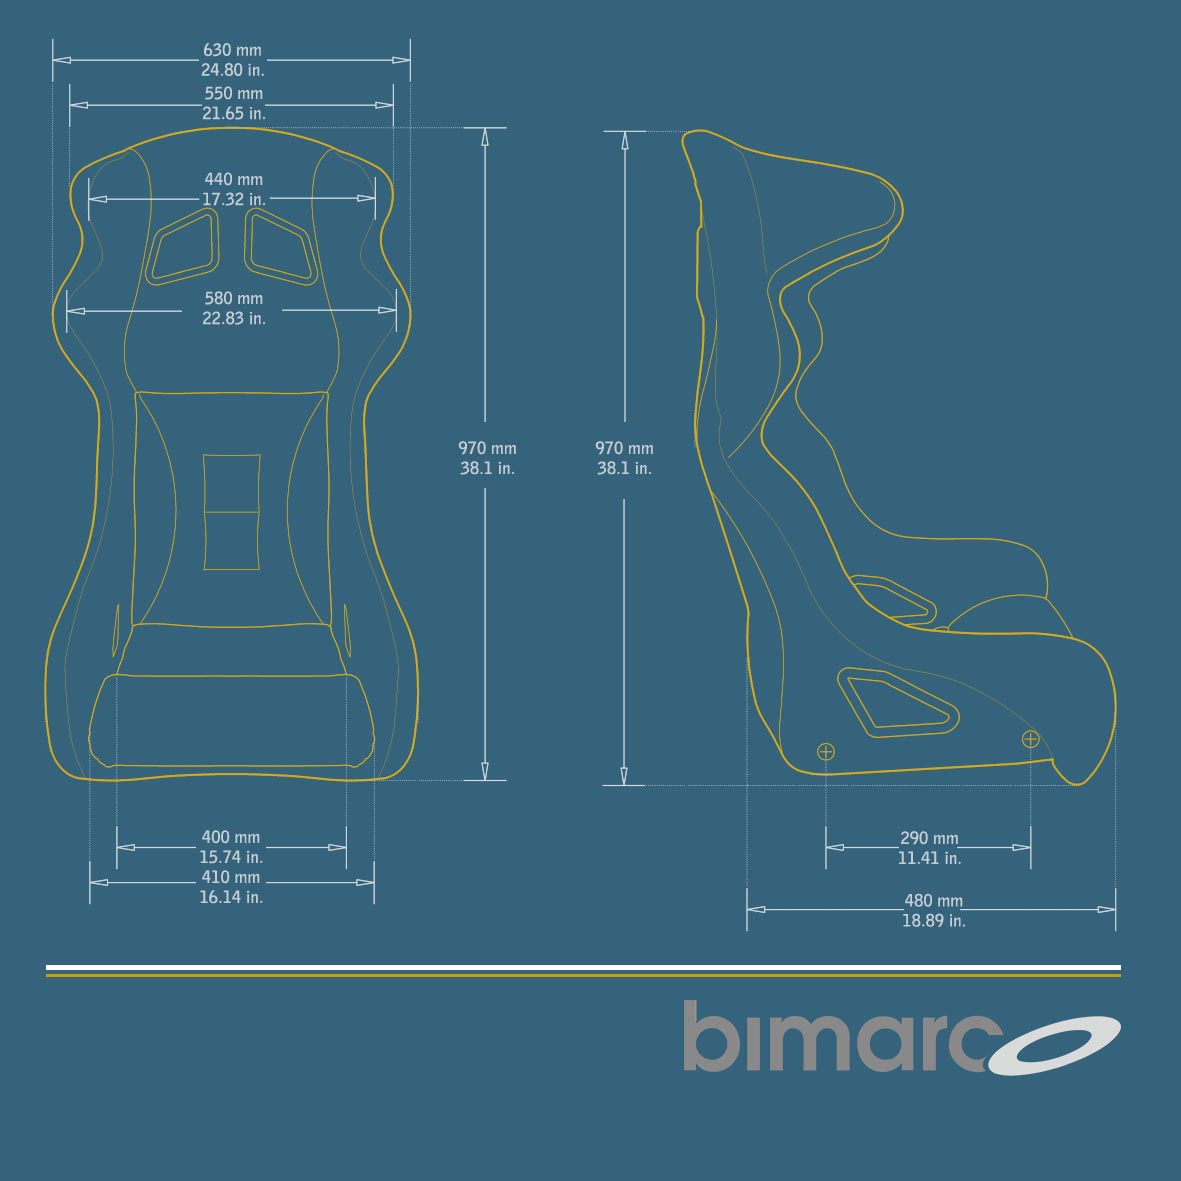 Bimarco Racer wymiary